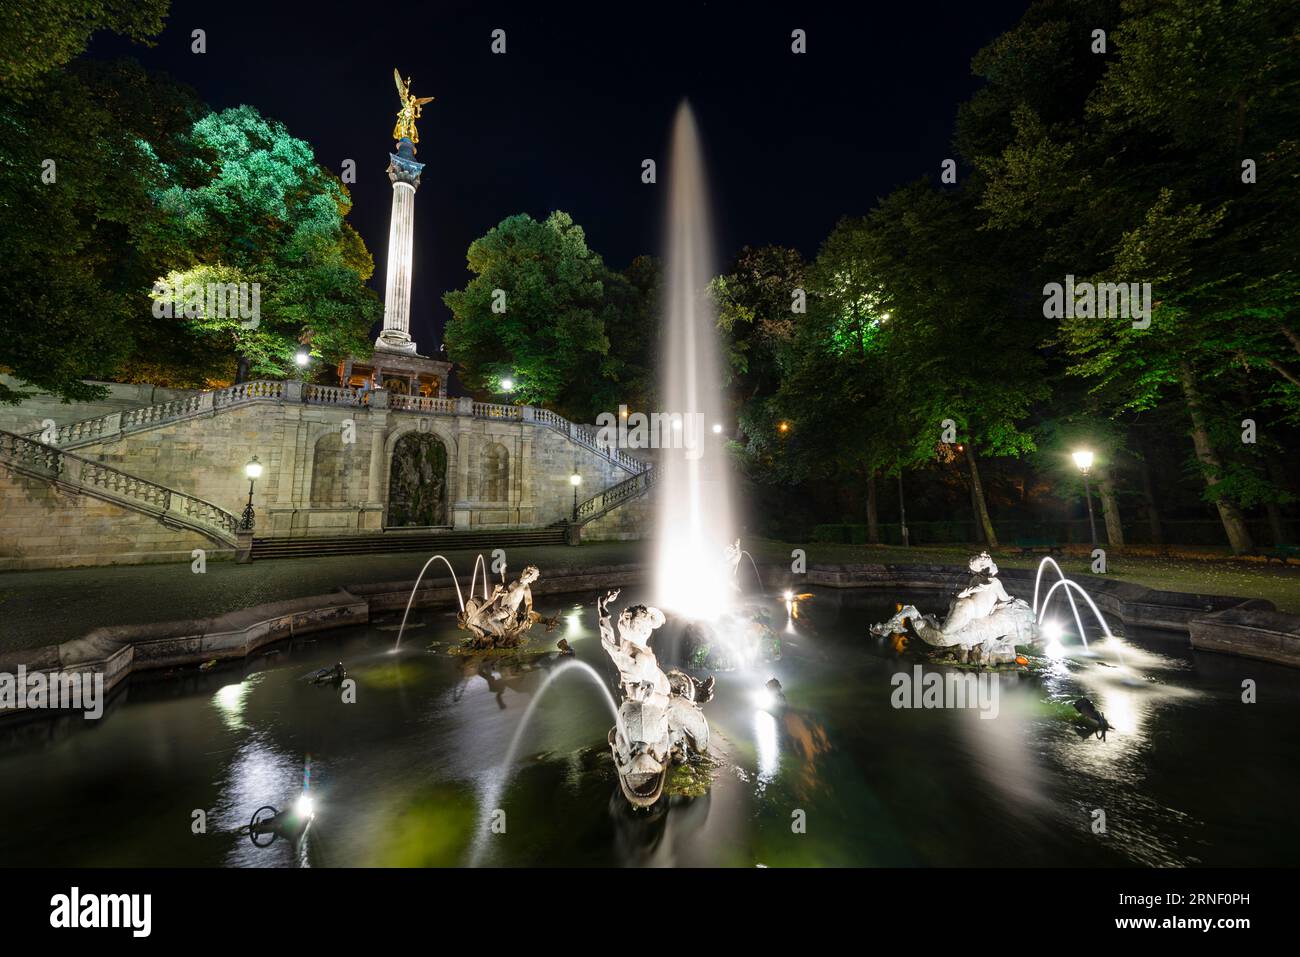 Fontana con getti d'acqua, sculture, scale e pilastro con l'angelo della pace nell'illuminazione notturna, Bogenhausen, Monaco, Germania Foto Stock